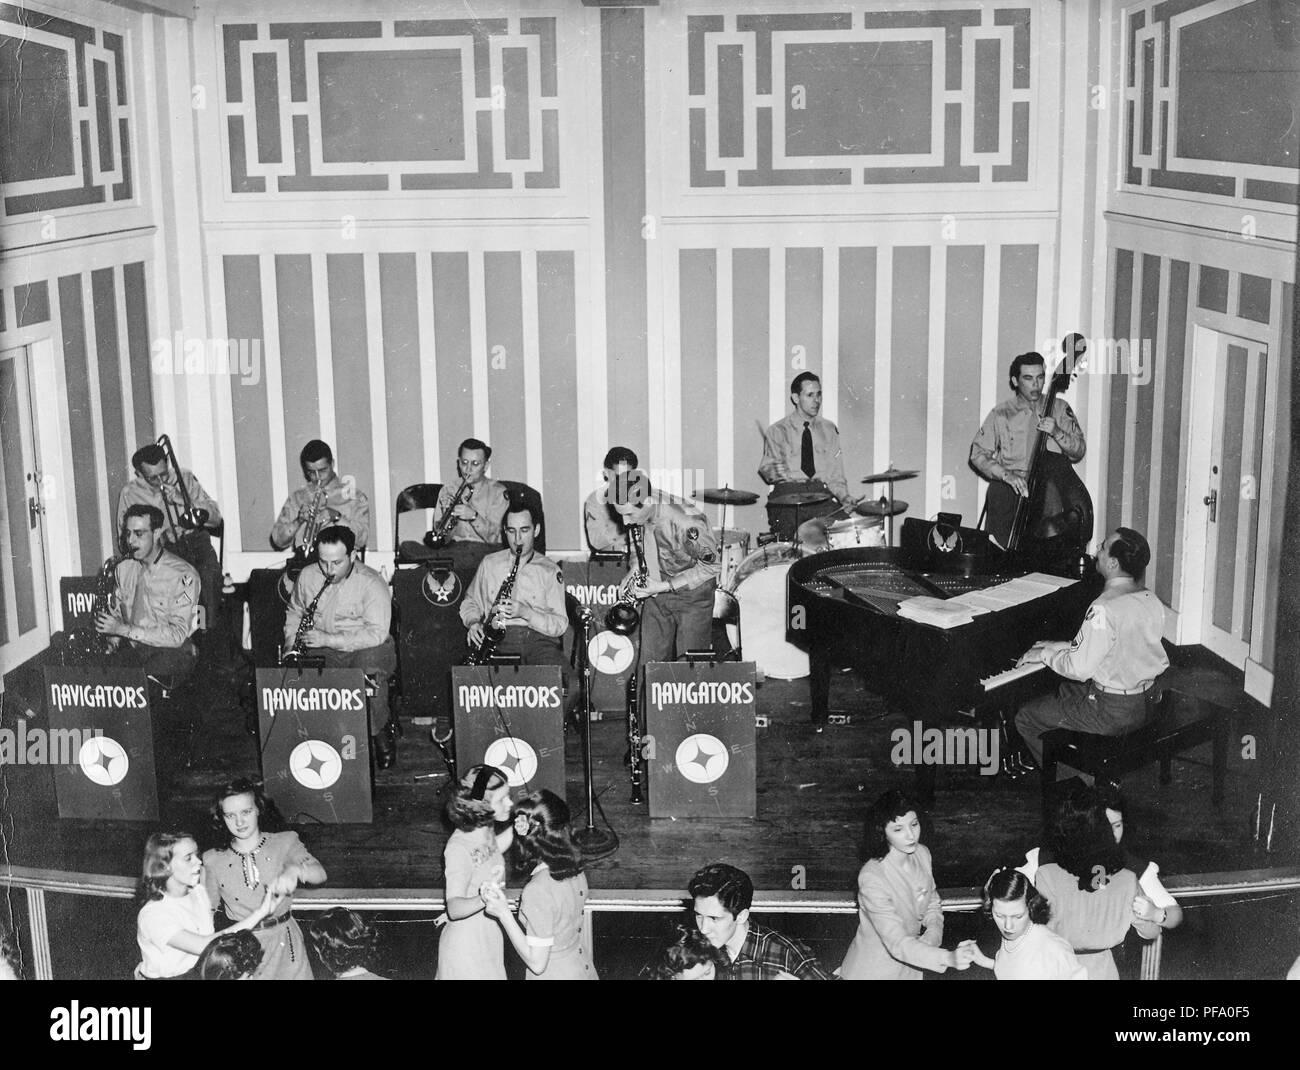 Schwarz-weiß Foto, anzeigen 11 männliche Mitglieder des 'big band Navigatoren', tragen militärische Kleidung, Sitzen und Stehen auf der Empore, und spielen Sie eine Vielzahl von Instrumenten, einschließlich Hörner, Saxophon, Schlagzeug, Bass und Piano, mit einem geflügelten-Symbol auf einem Ständer an der Rückseite eine Air Force Zugehörigkeit, und mit Tänzern, meist weiblichen, sichtbar in den Vordergrund, wahrscheinlich in Ohio fotografiert, während des Zweiten Weltkrieges, 1945. () Stockfoto